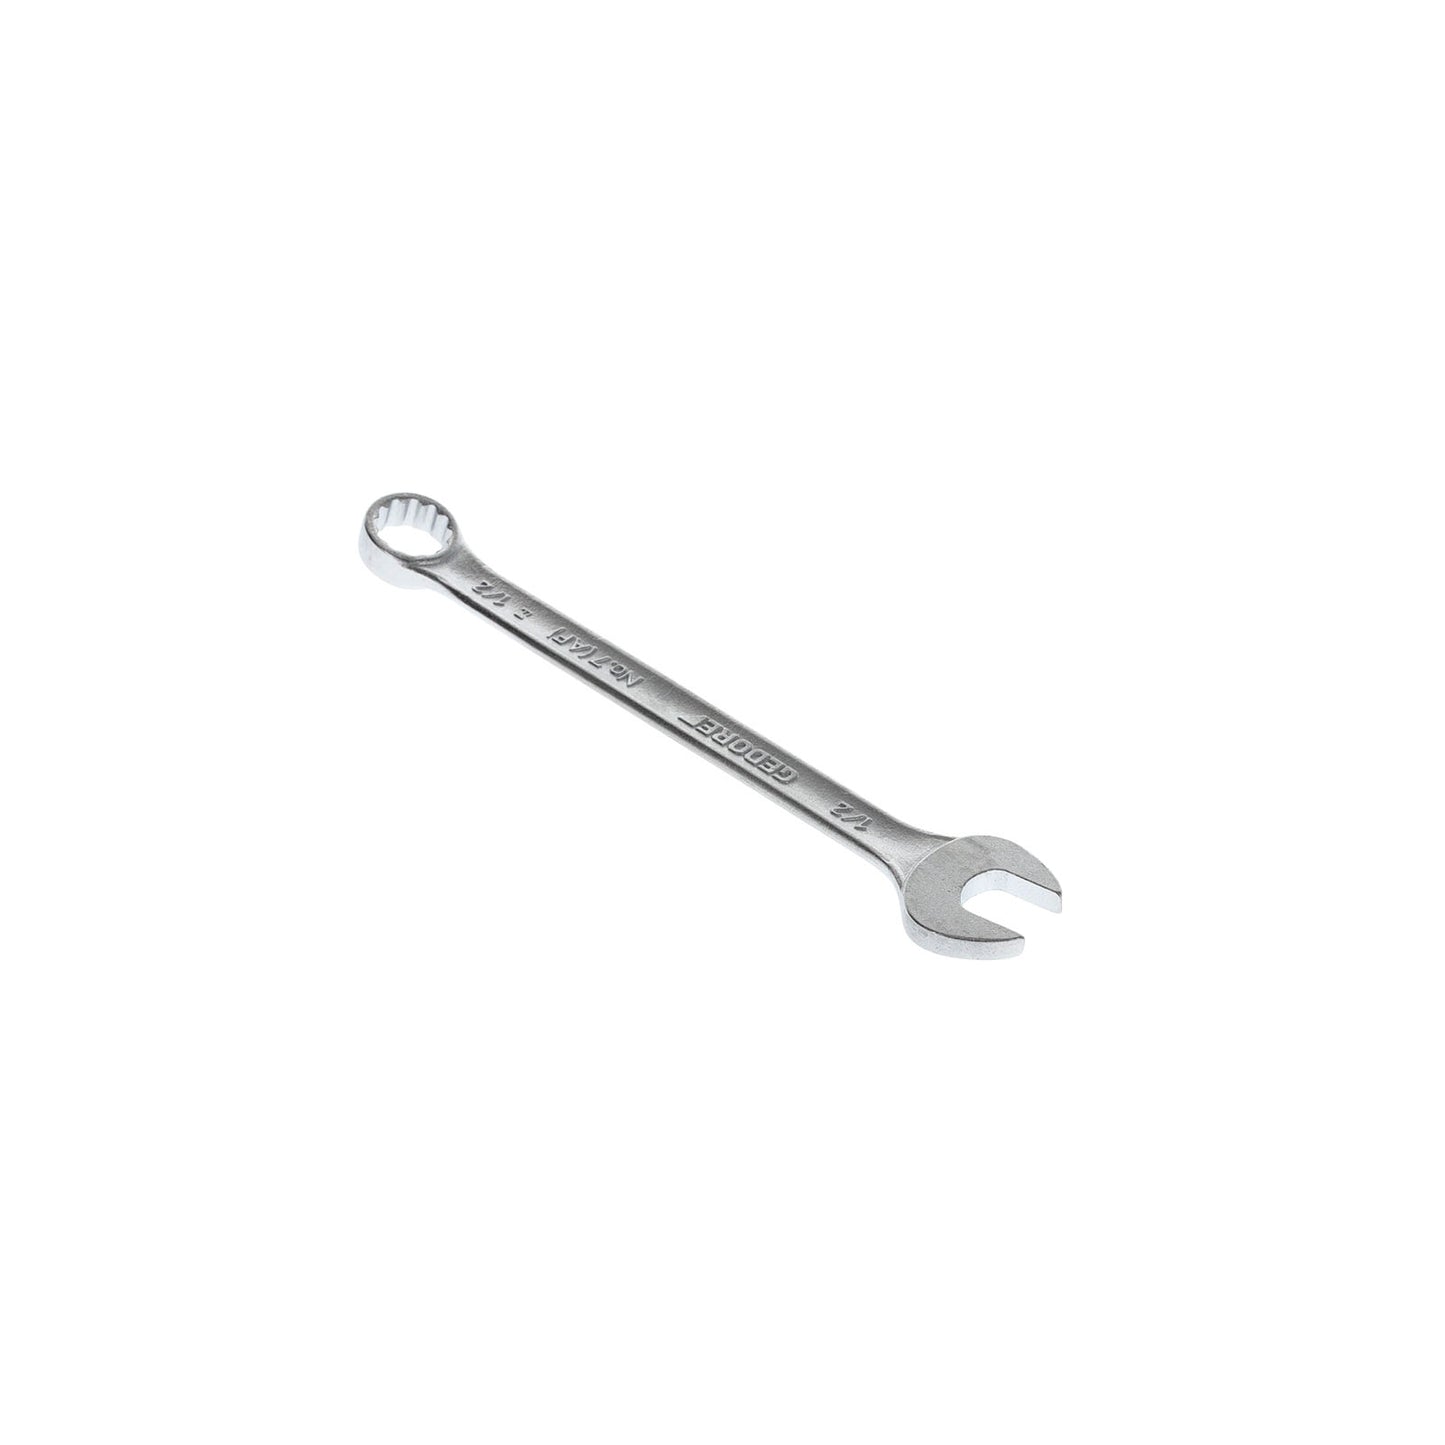 GEDORE 7 1/2AF - Combination Wrench, 1/2AF (6099430)